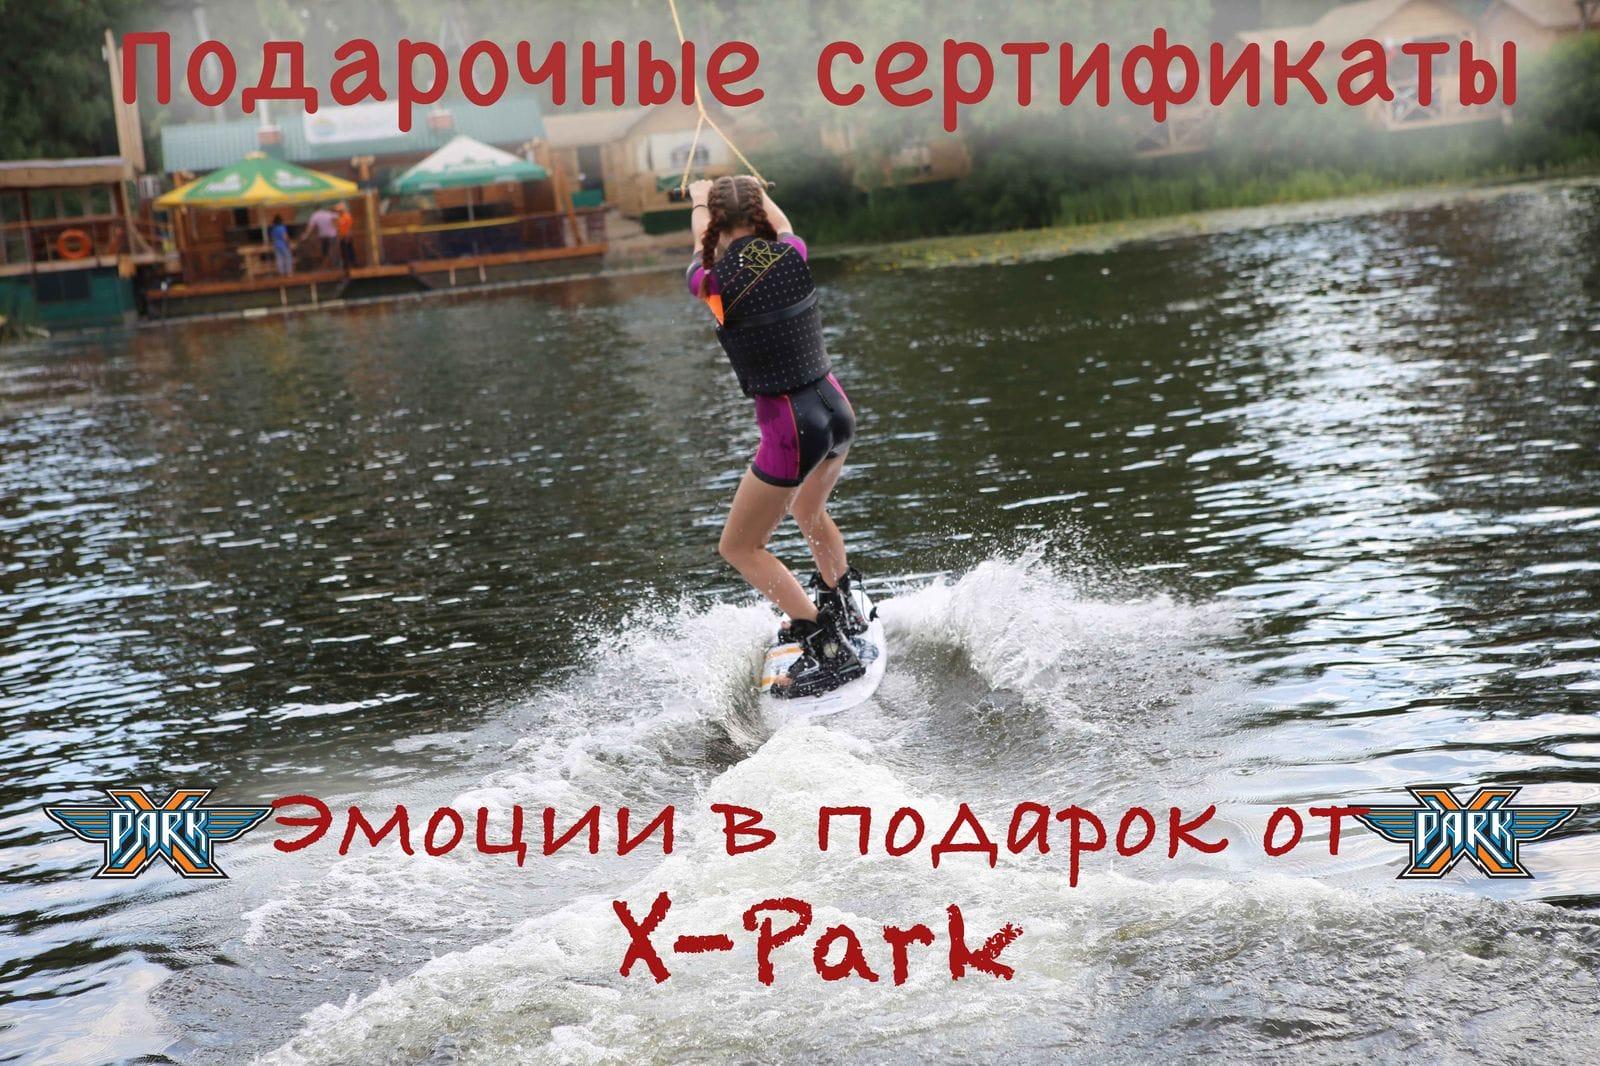 подарочные сертификаты киев xpark вейкборд